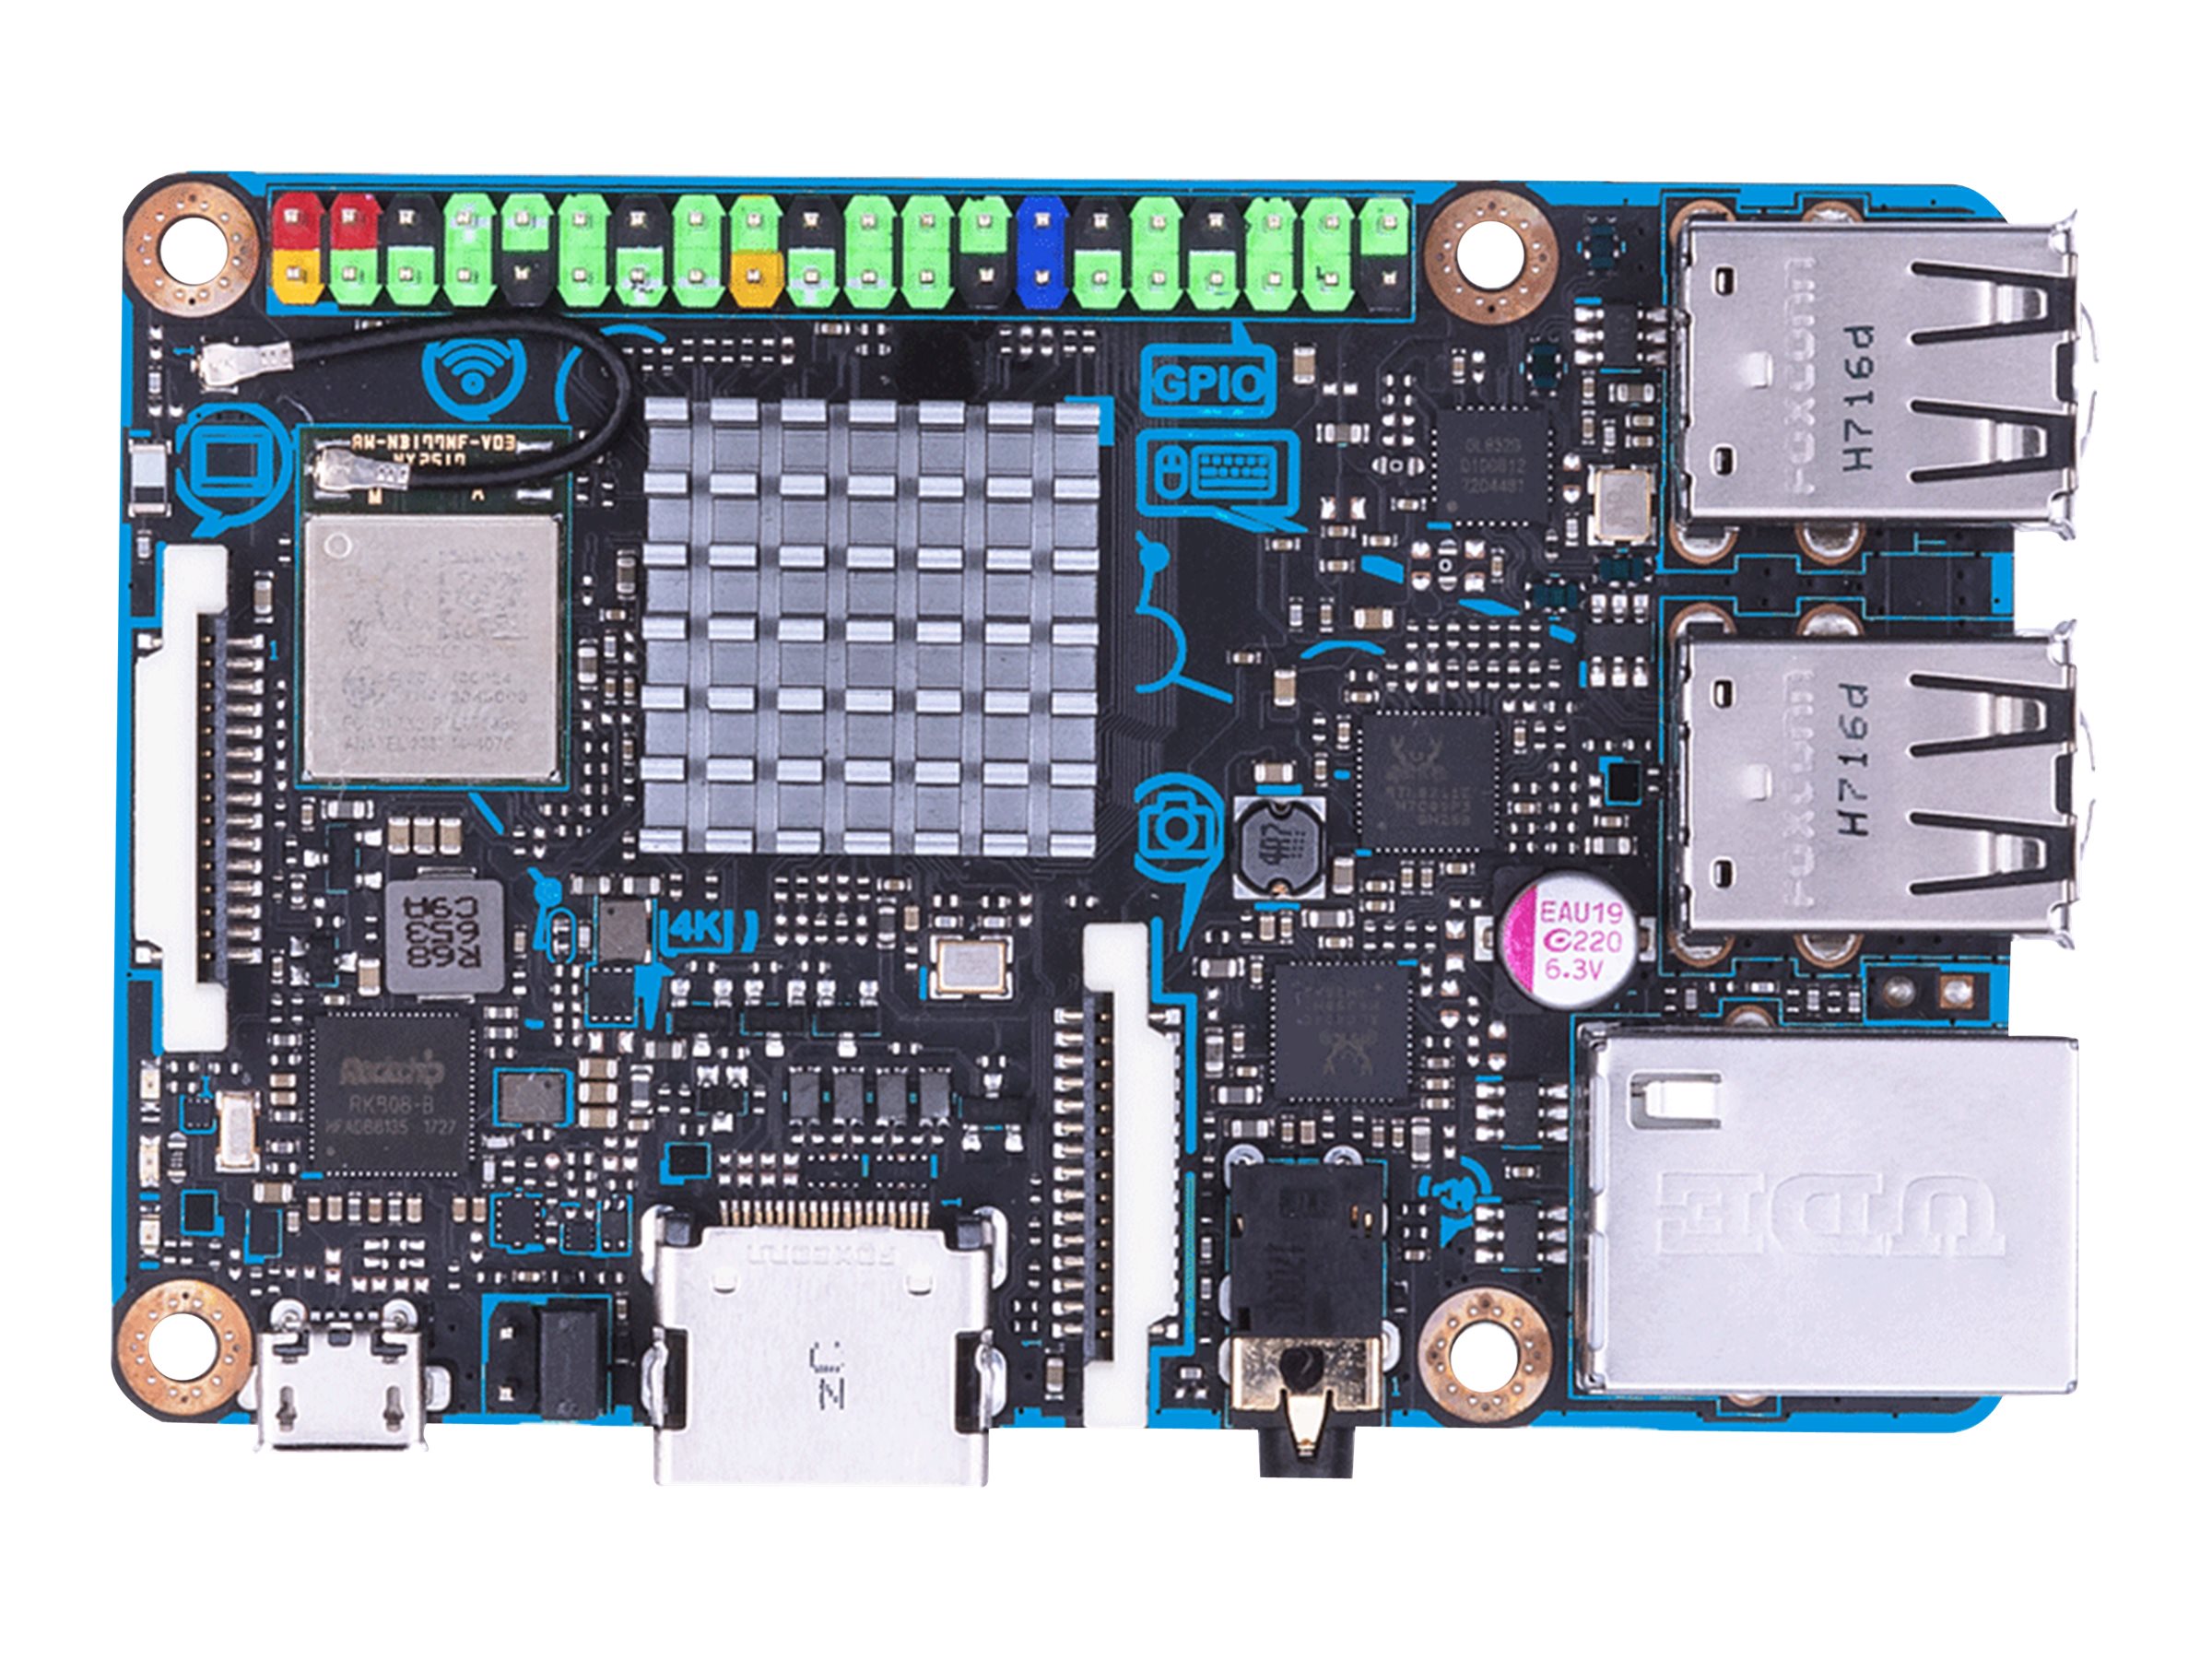 ASUS Tinker Board S R2.0 - Einplatinenrechner